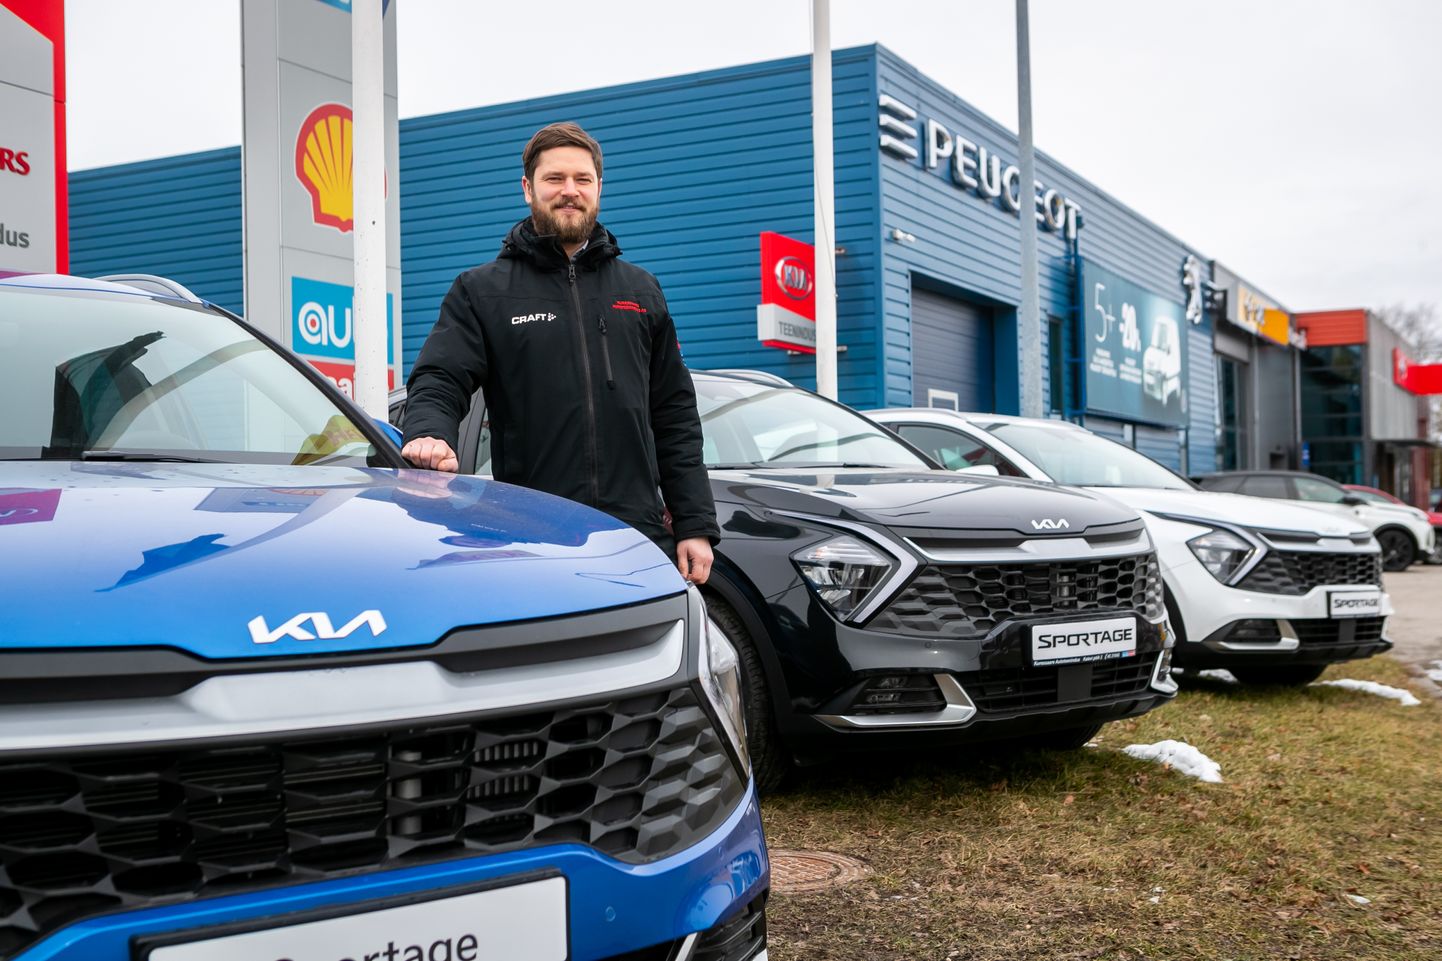 VAEVA TULEB NÄHA: Automüügikonsultant Kristian Teerni sõnul tuleb müügialal praegu rohkem vaeva näha. Tulemused näitavad aga, et see tasub ka ära.